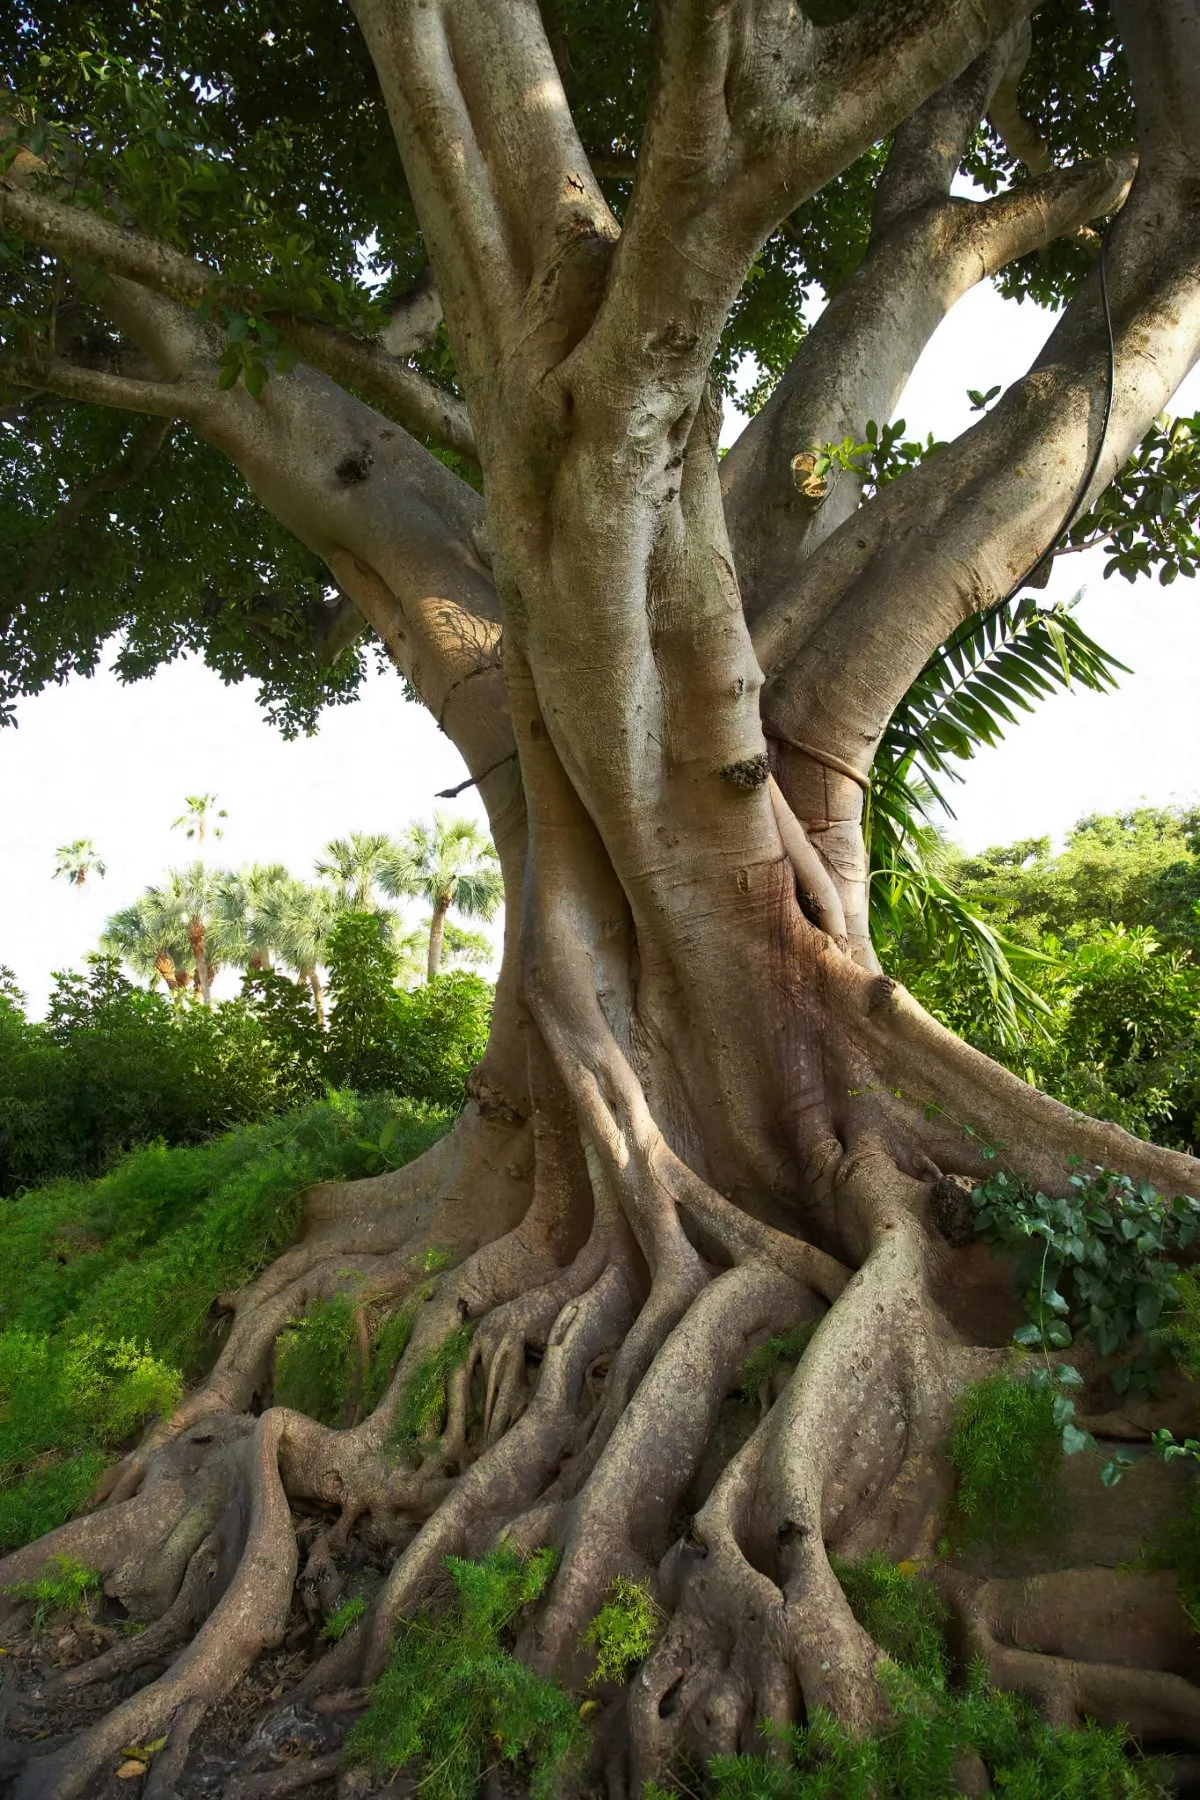 arbre centenaire avec de grosses racines a la surface